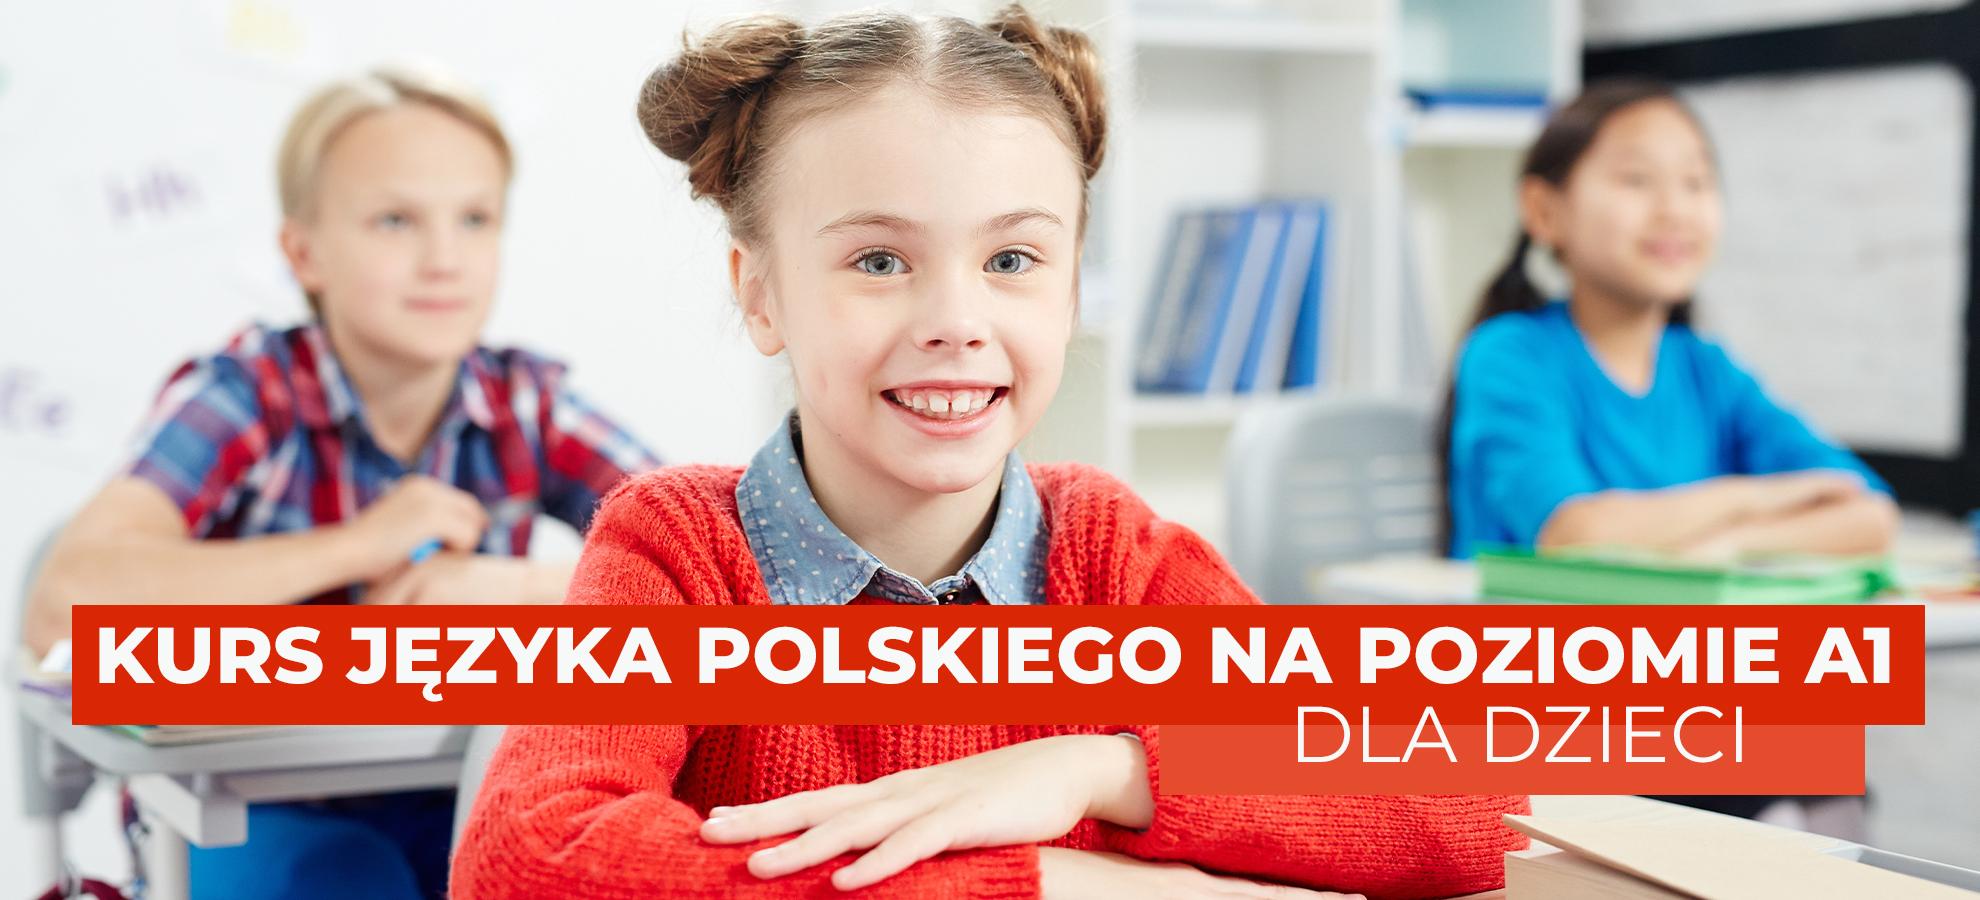 Kurs języka polskiego na poziomie A1